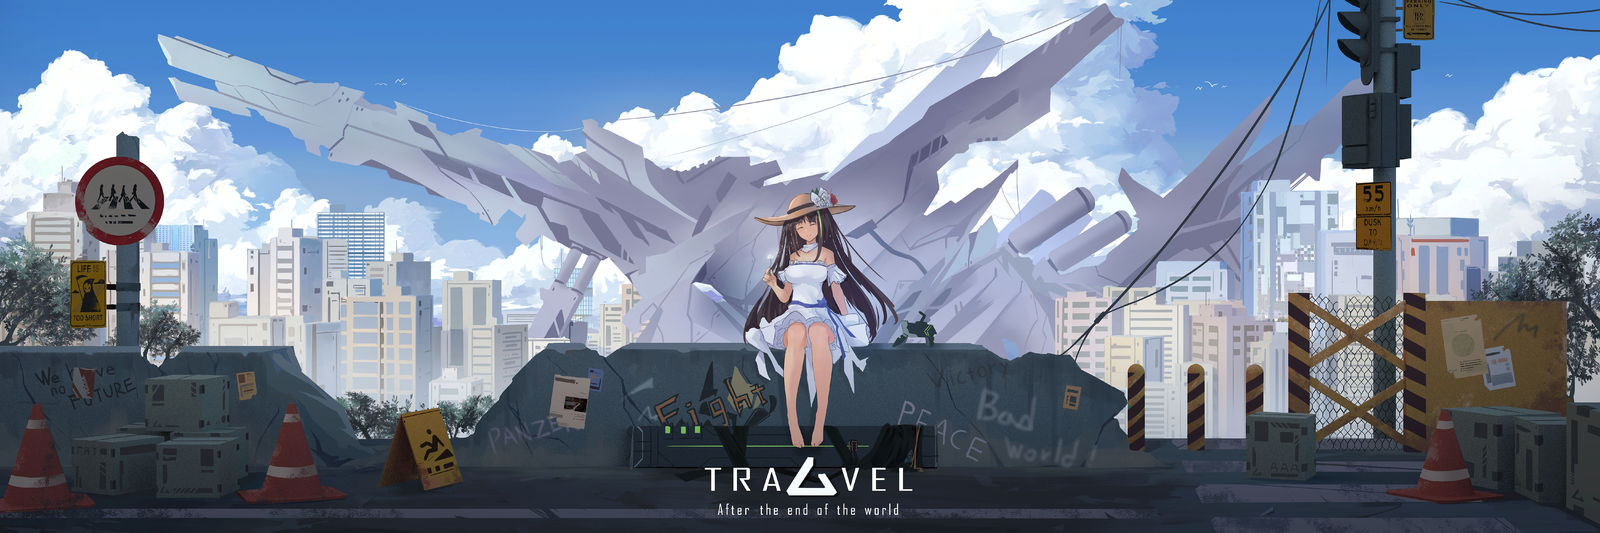 Travel after the end of world插画图片壁纸